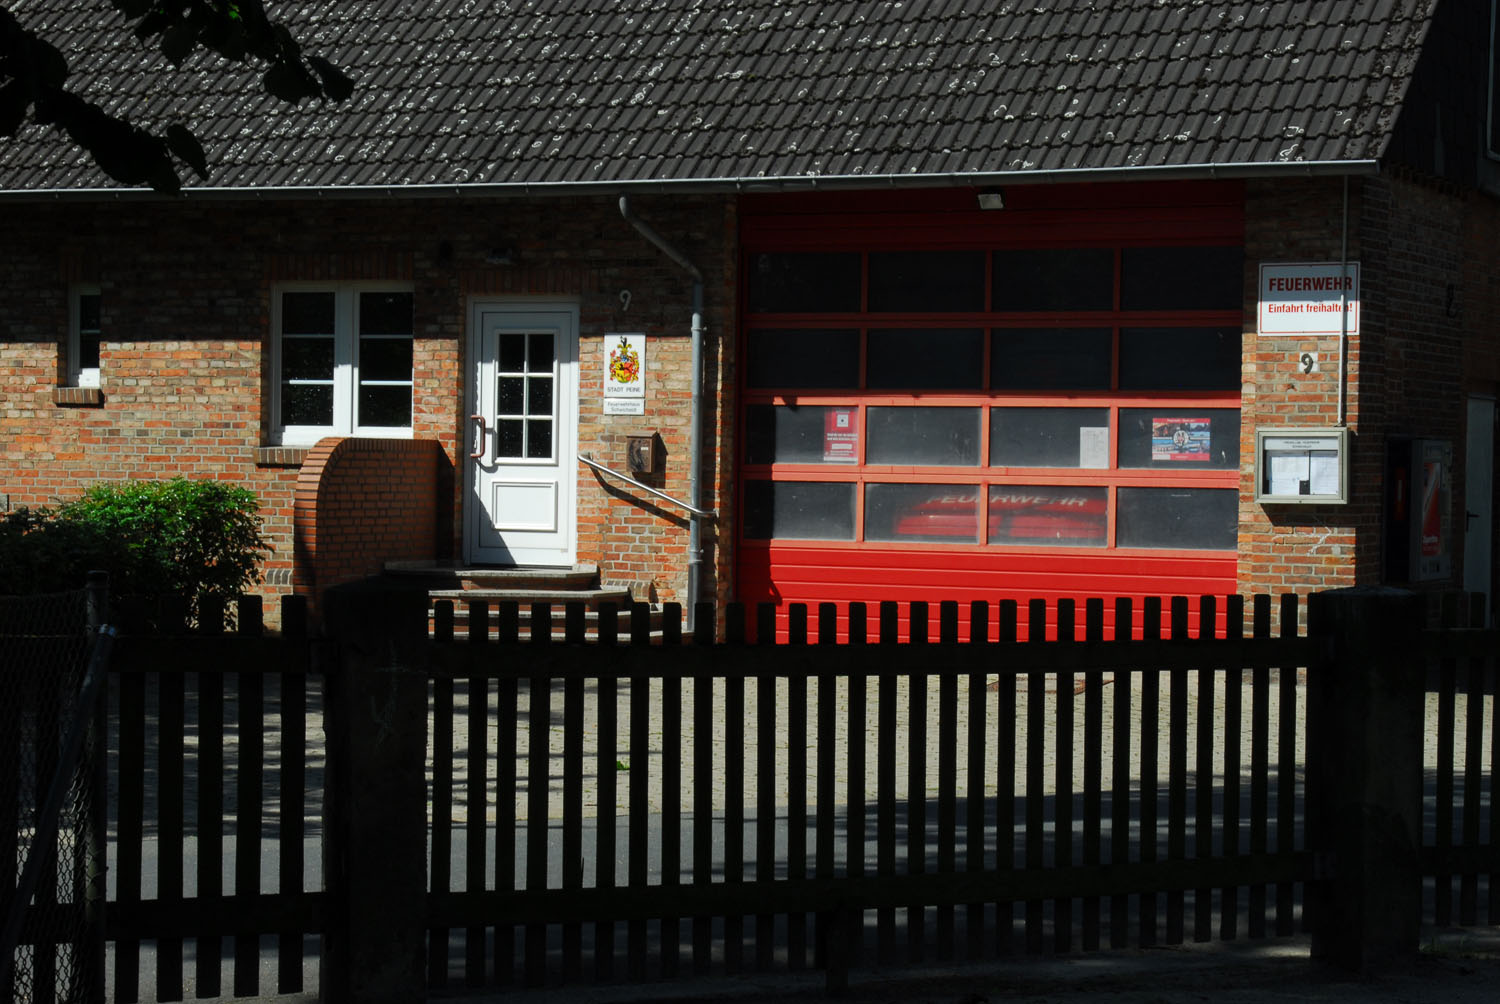 Feuerwehr Gerätehaus 